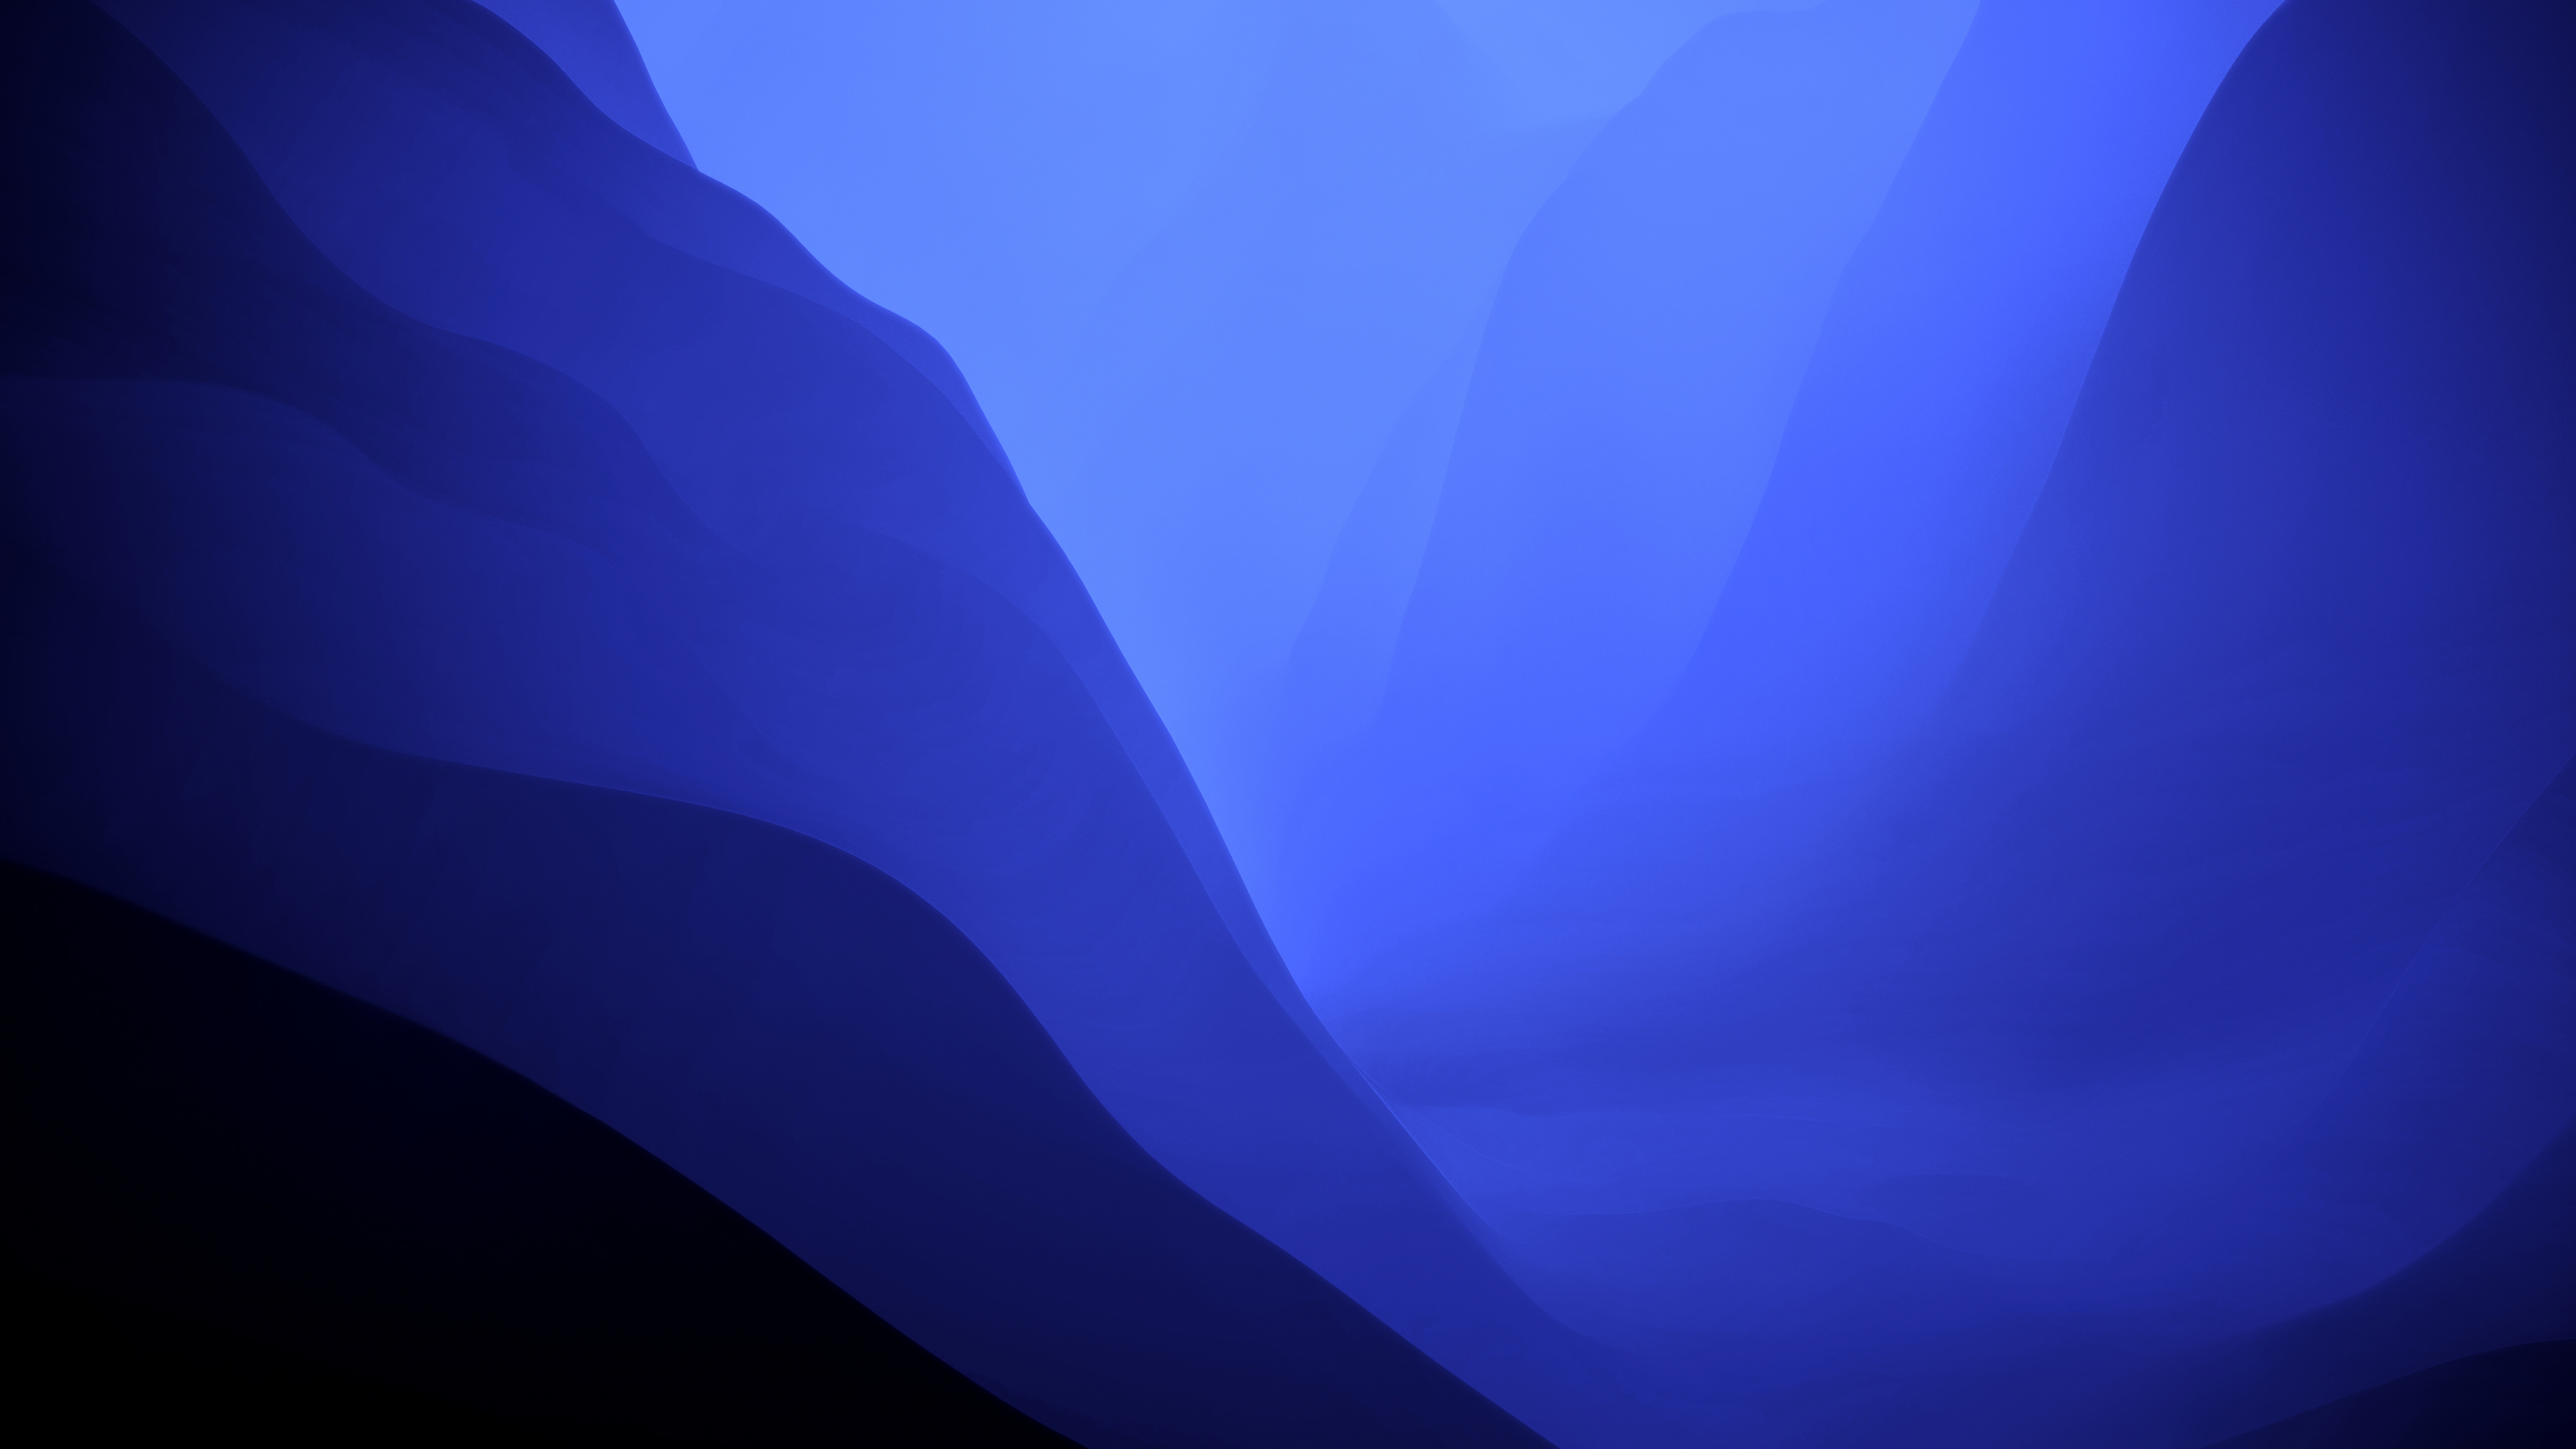 Mẫu hình nền macOS Monterey Wallpaper 4K có độ phân giải cao sẽ khiến cho màn hình máy tính của bạn trở nên sống động và đẹp mắt hơn bao giờ hết. Hãy đón xem hình ảnh này và cảm nhận sự mượt mà của đường nét trên nền màu xanh đậm làm nền.